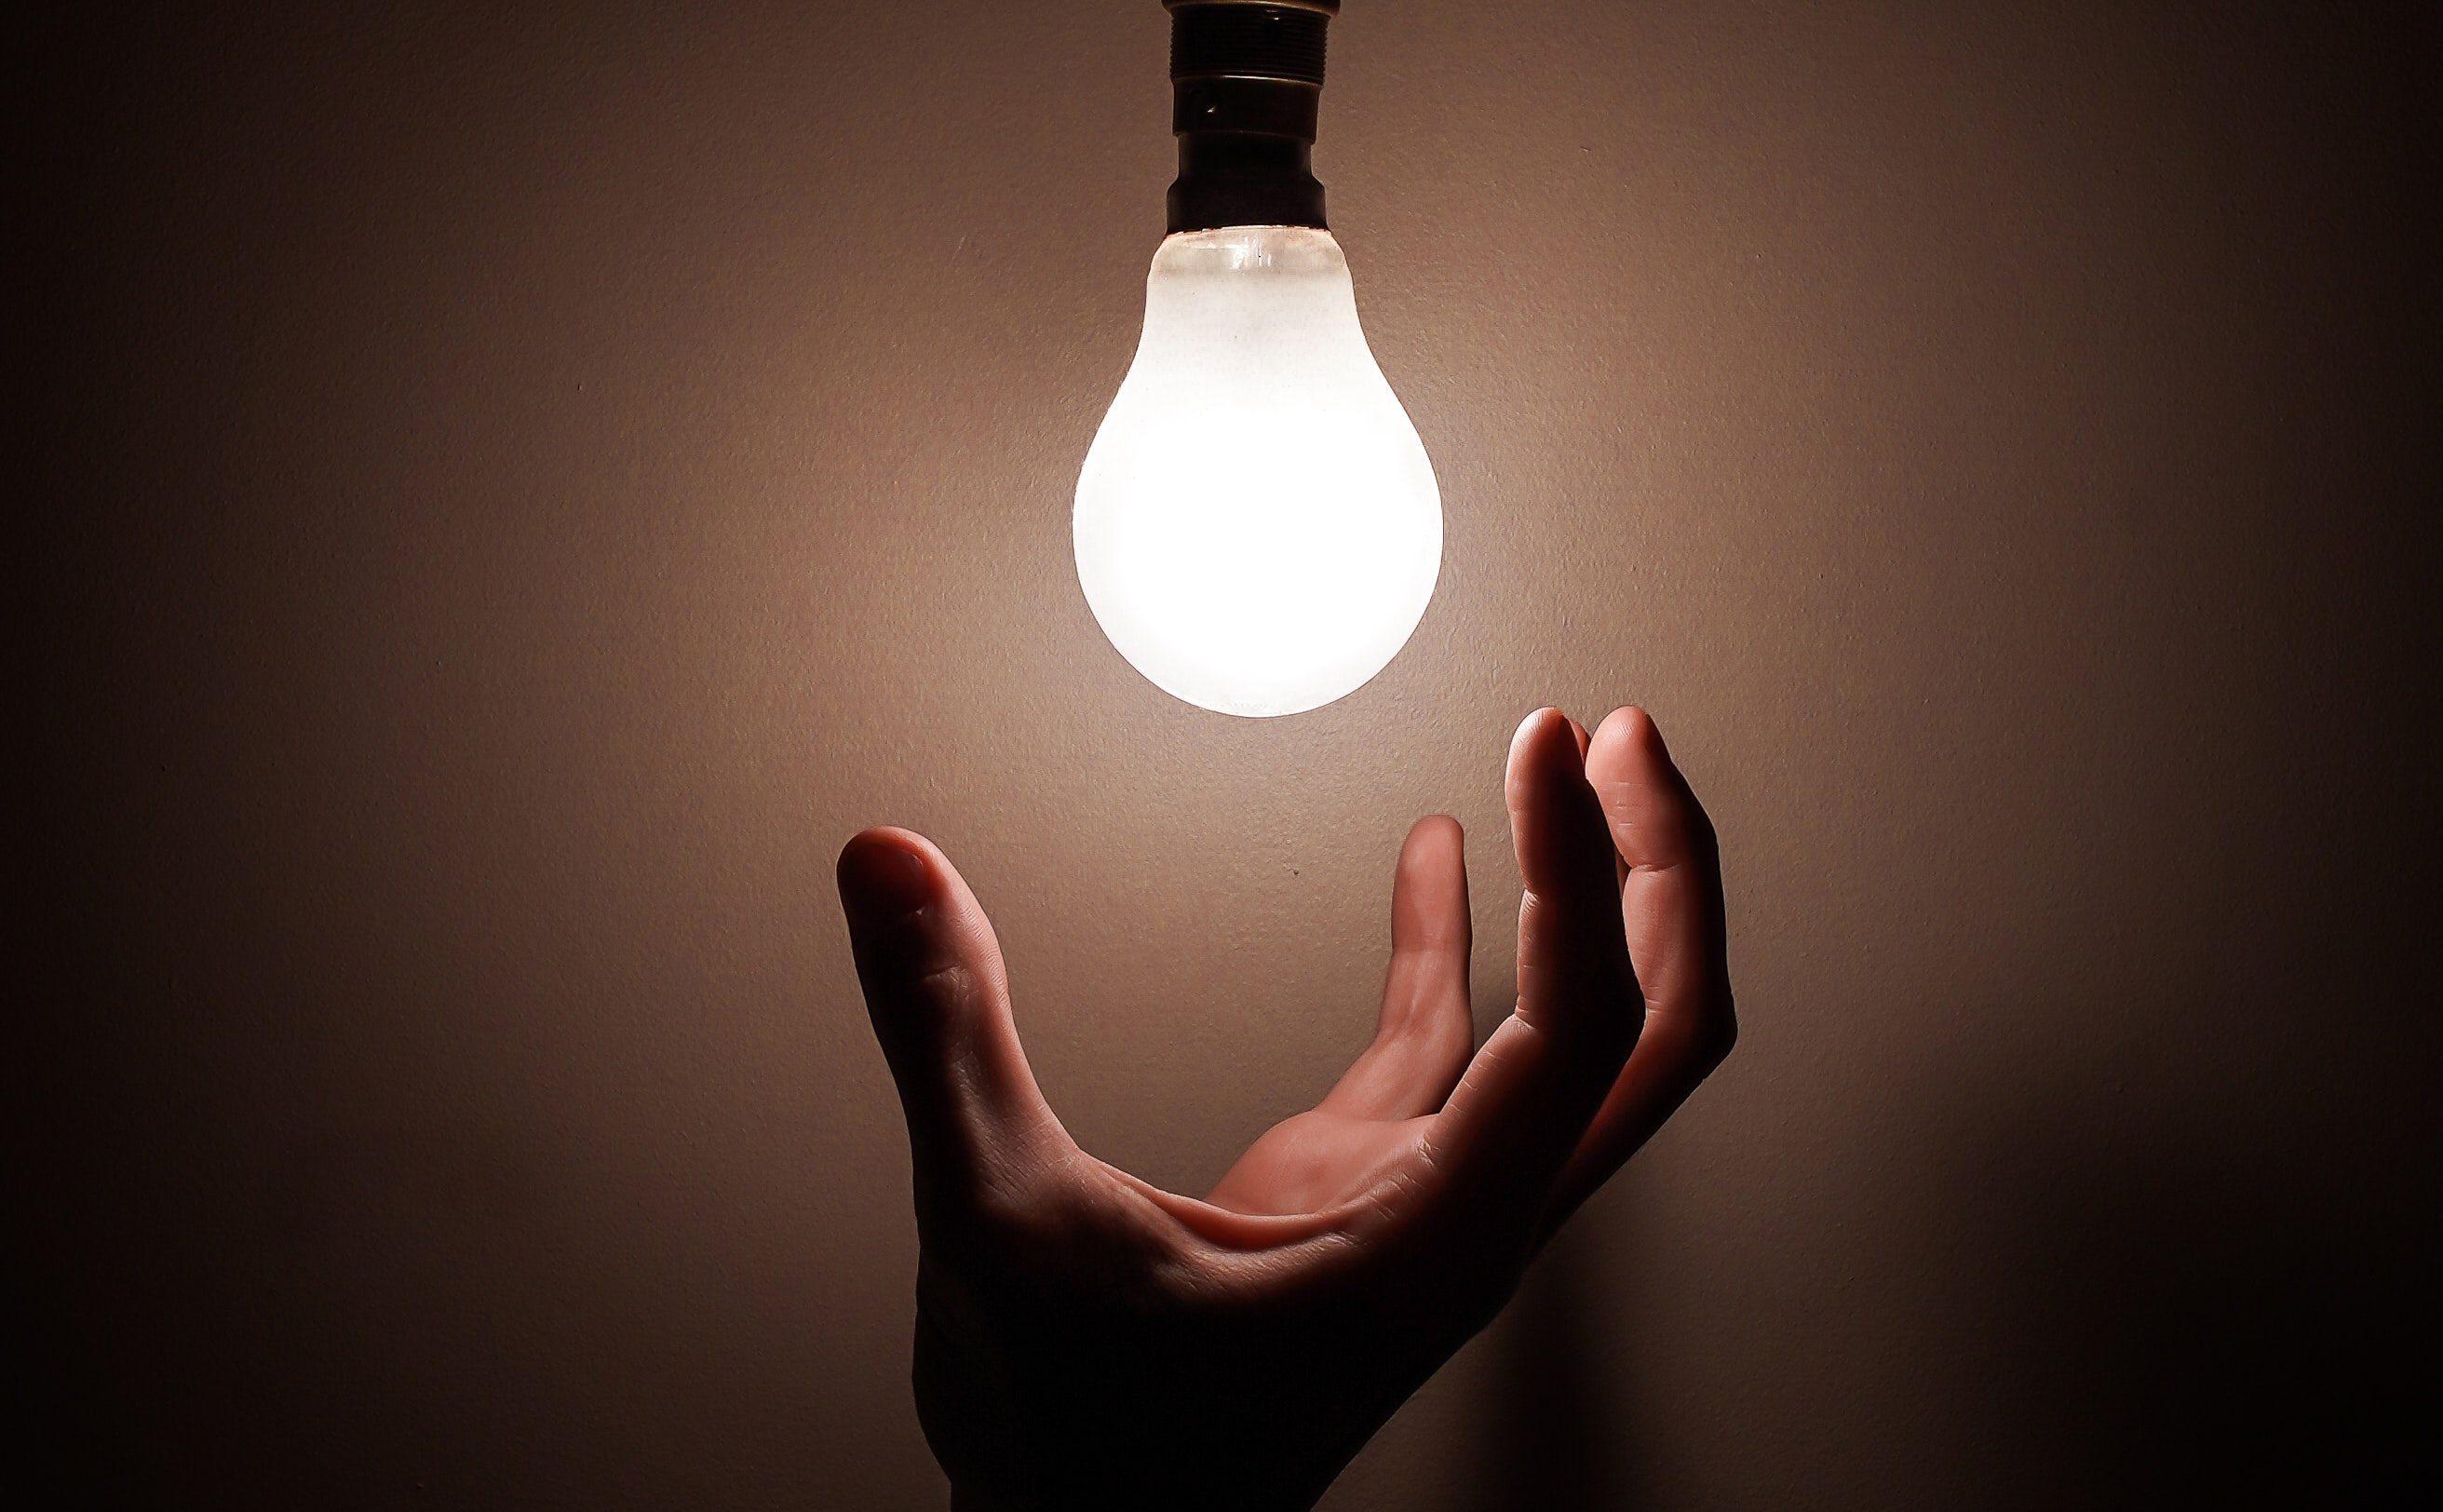 Strom- und Gasrechnungen: Zu sehen ist eine Hand, die dabei ist eine leuchtende Glühbirne anzufassen.